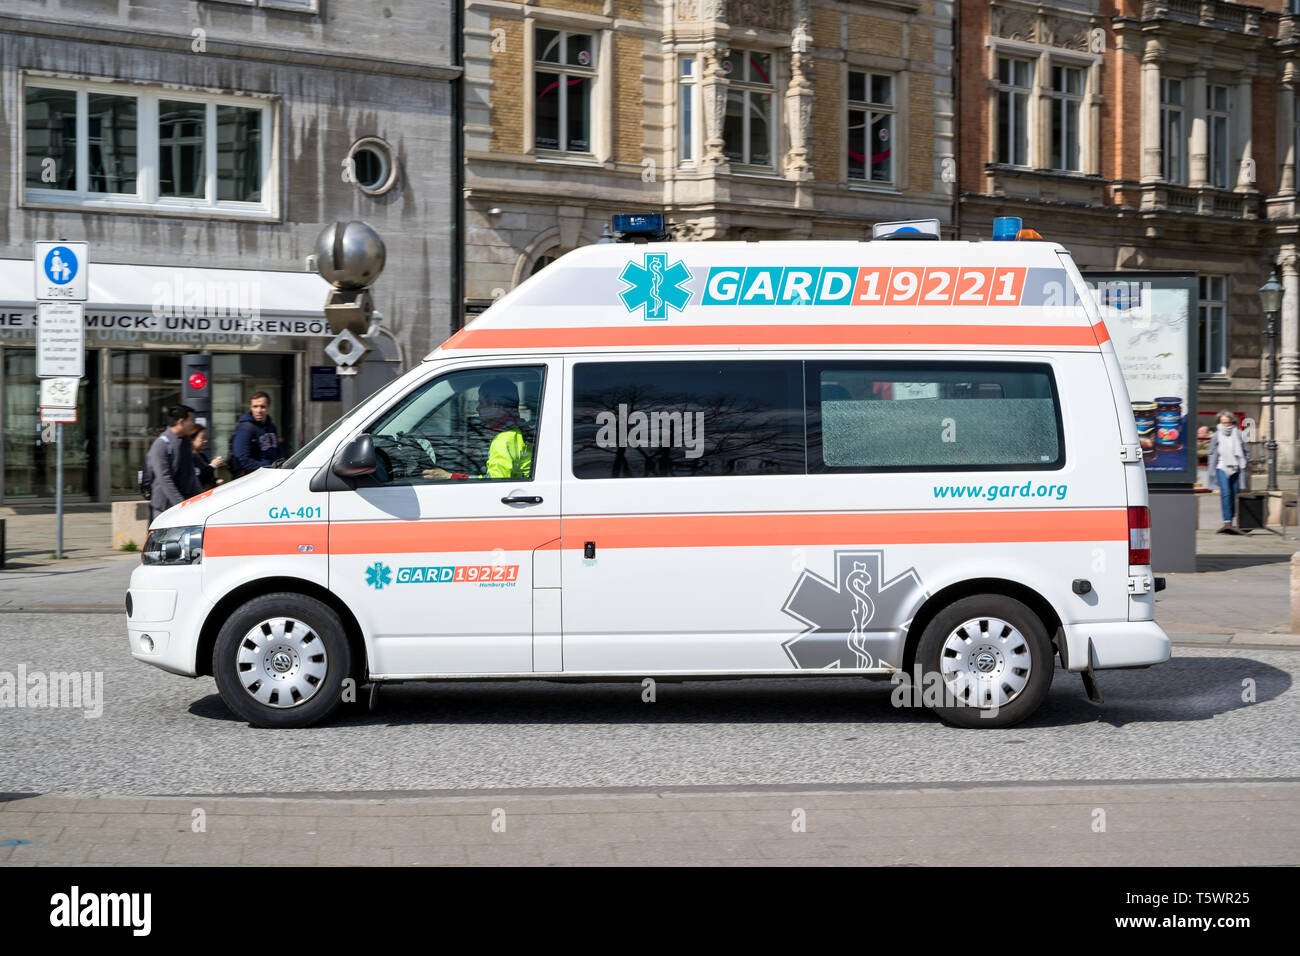 G.A.R.D. ambulance. The Gemeinnützige Ambulanz und Rettungsdienst